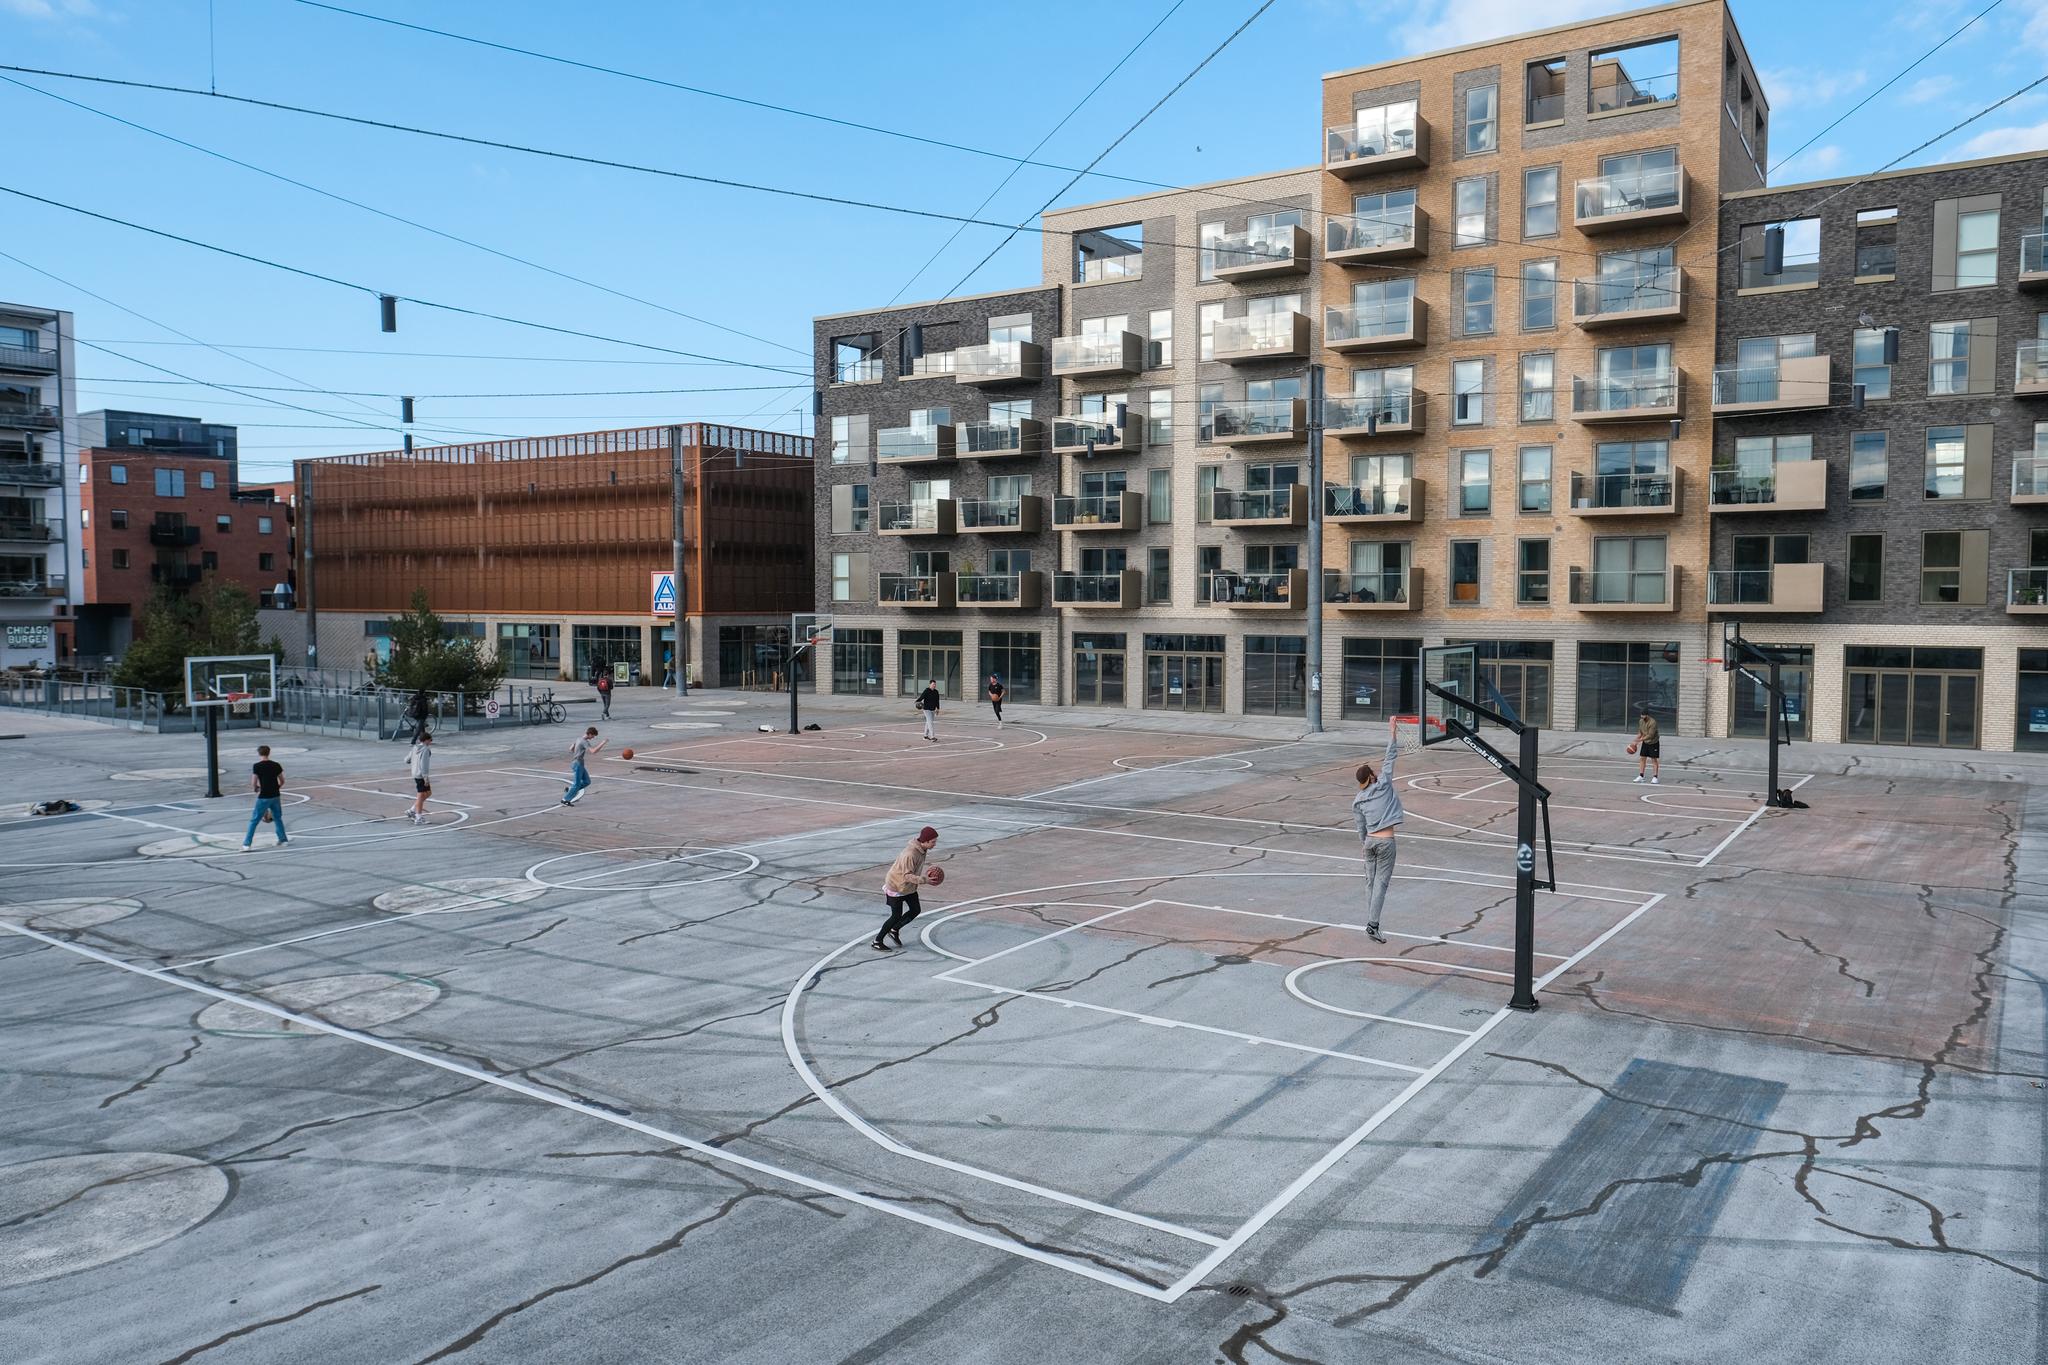 Byutvikling i Odense legger mye fokus på trivsel og rekreasjon. Her fra en av mange offentlige idrettsbaner.